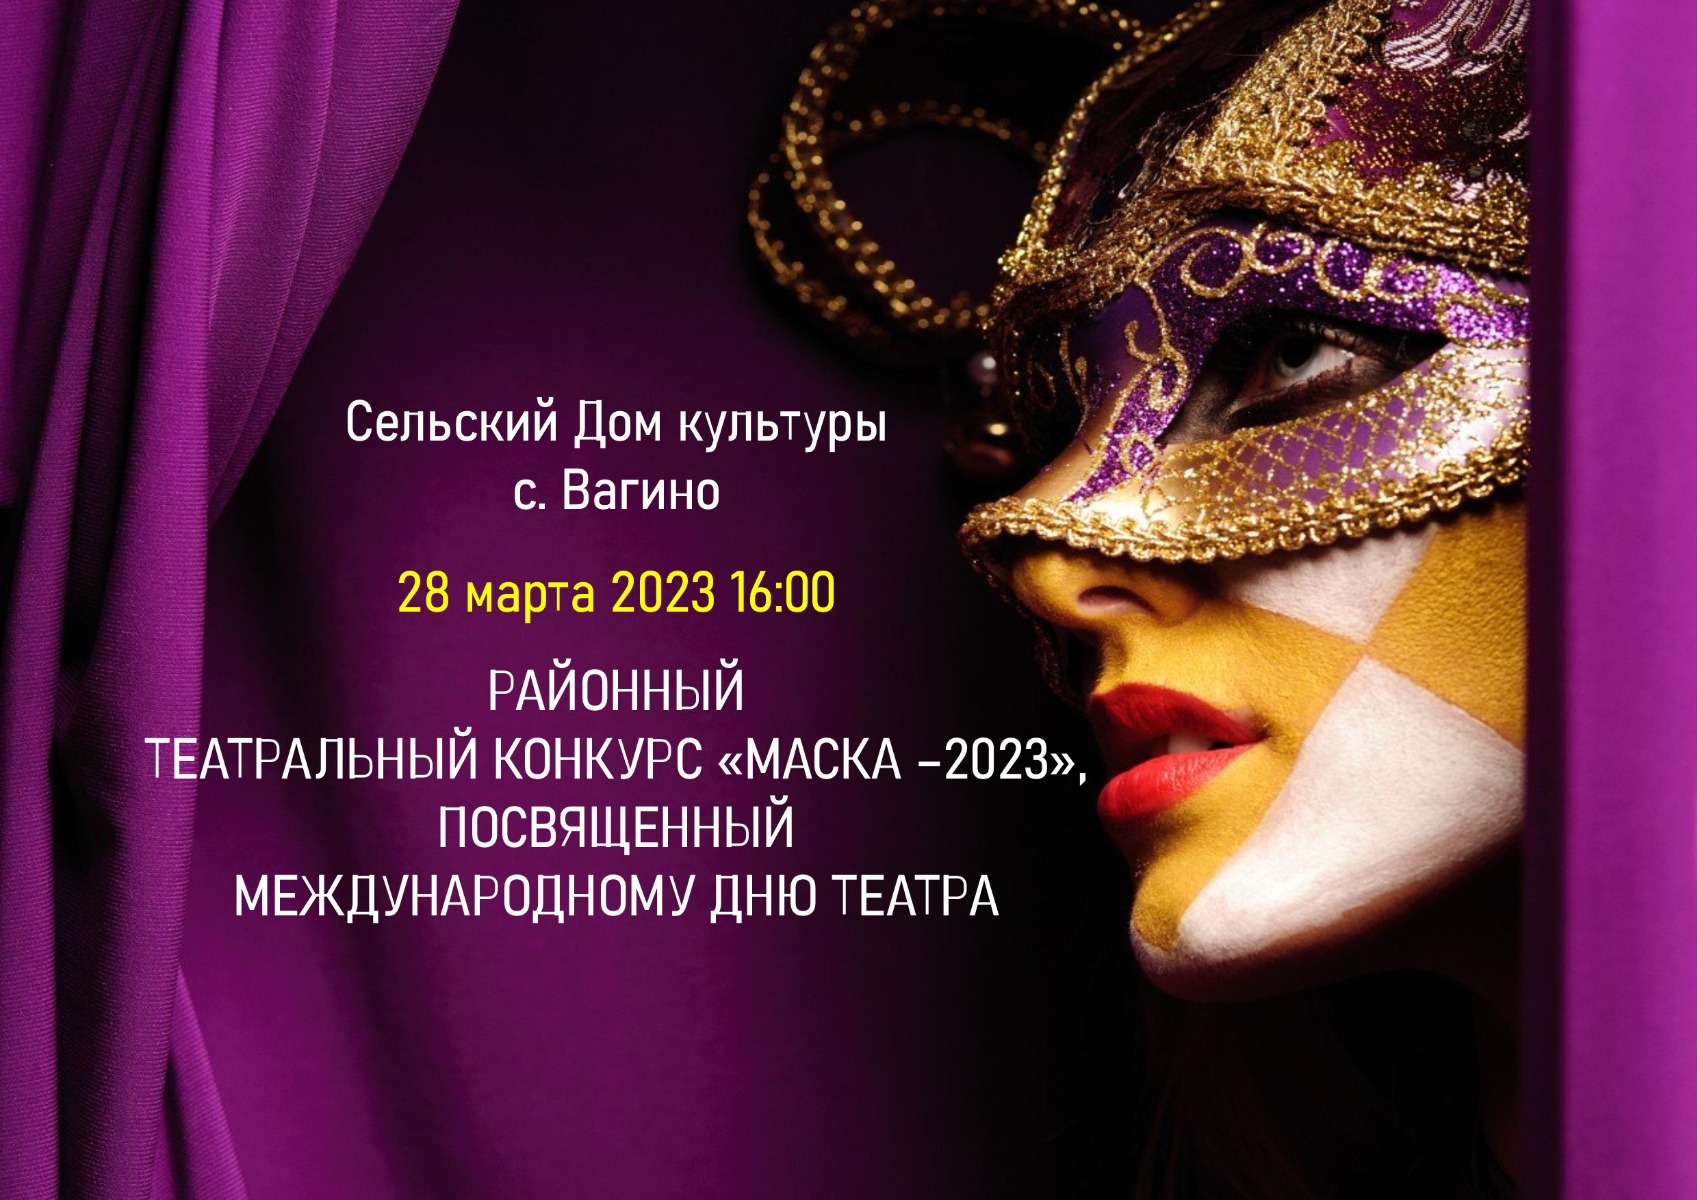 28 марта 2023 16:00 в сельском Доме культуры с. Вагино состоится районный театральный конкурс "Маска - 2023"